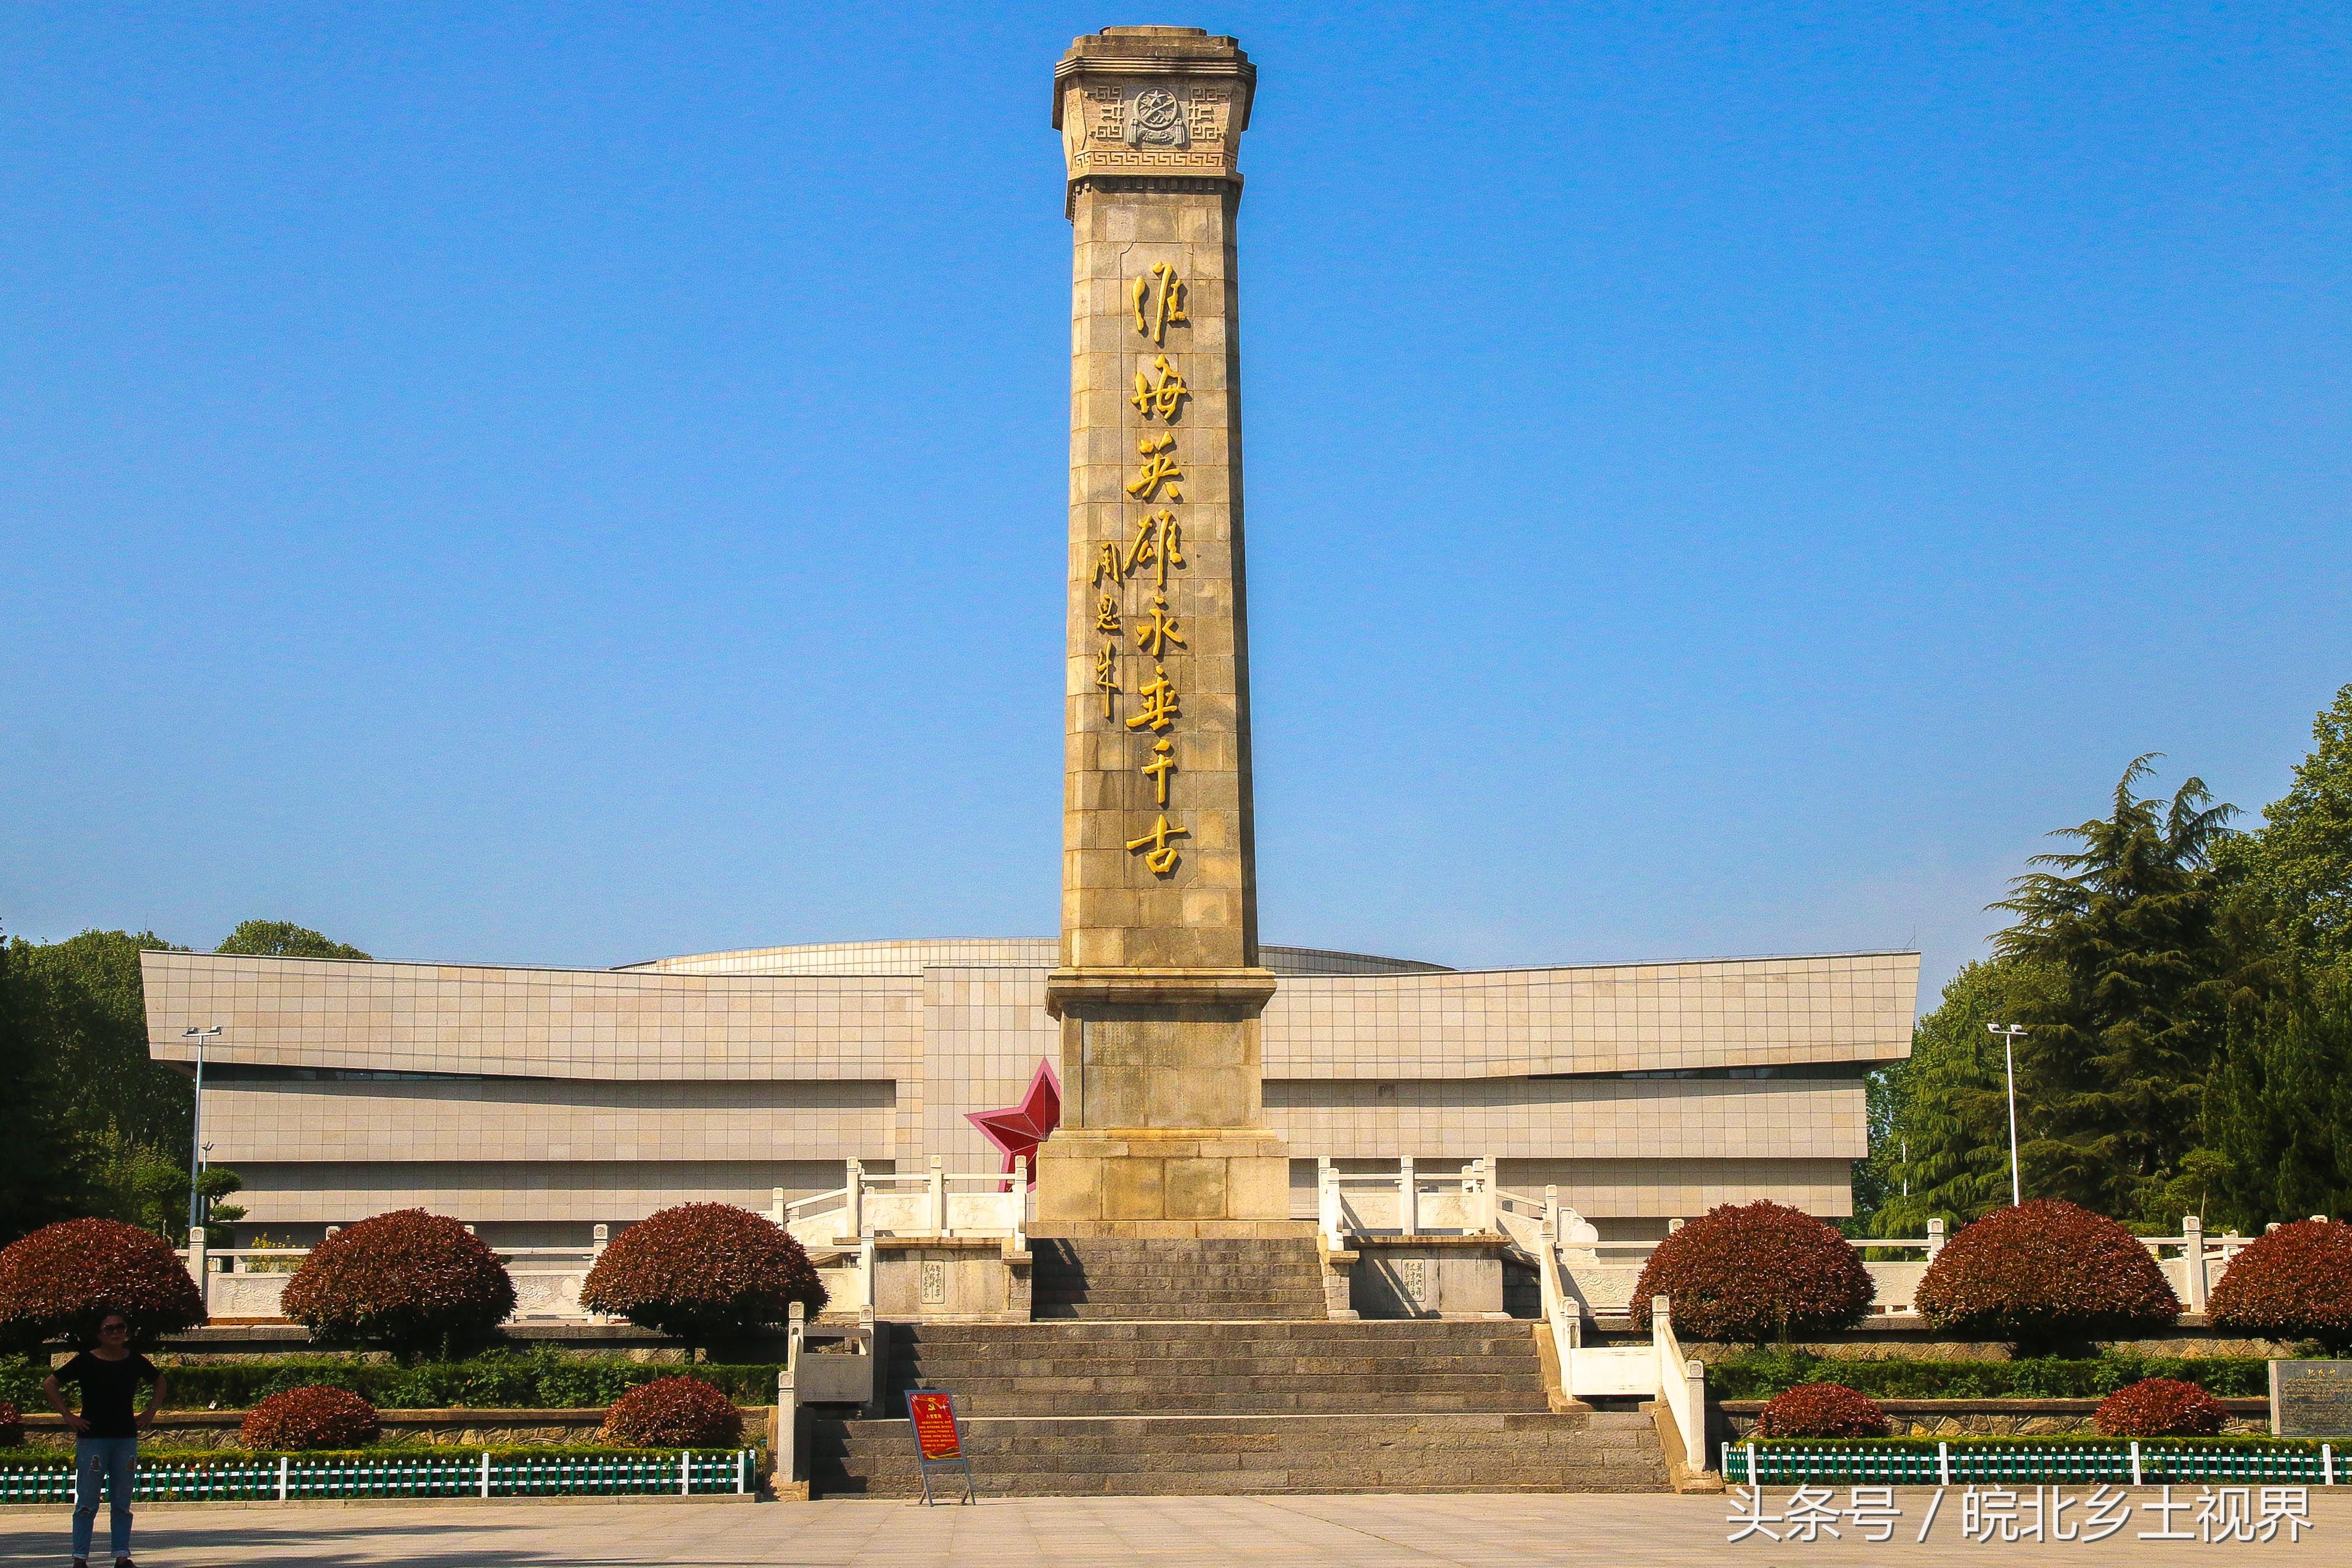 实拍淮海战役陈官庄纪念馆,14张图,战役中用的